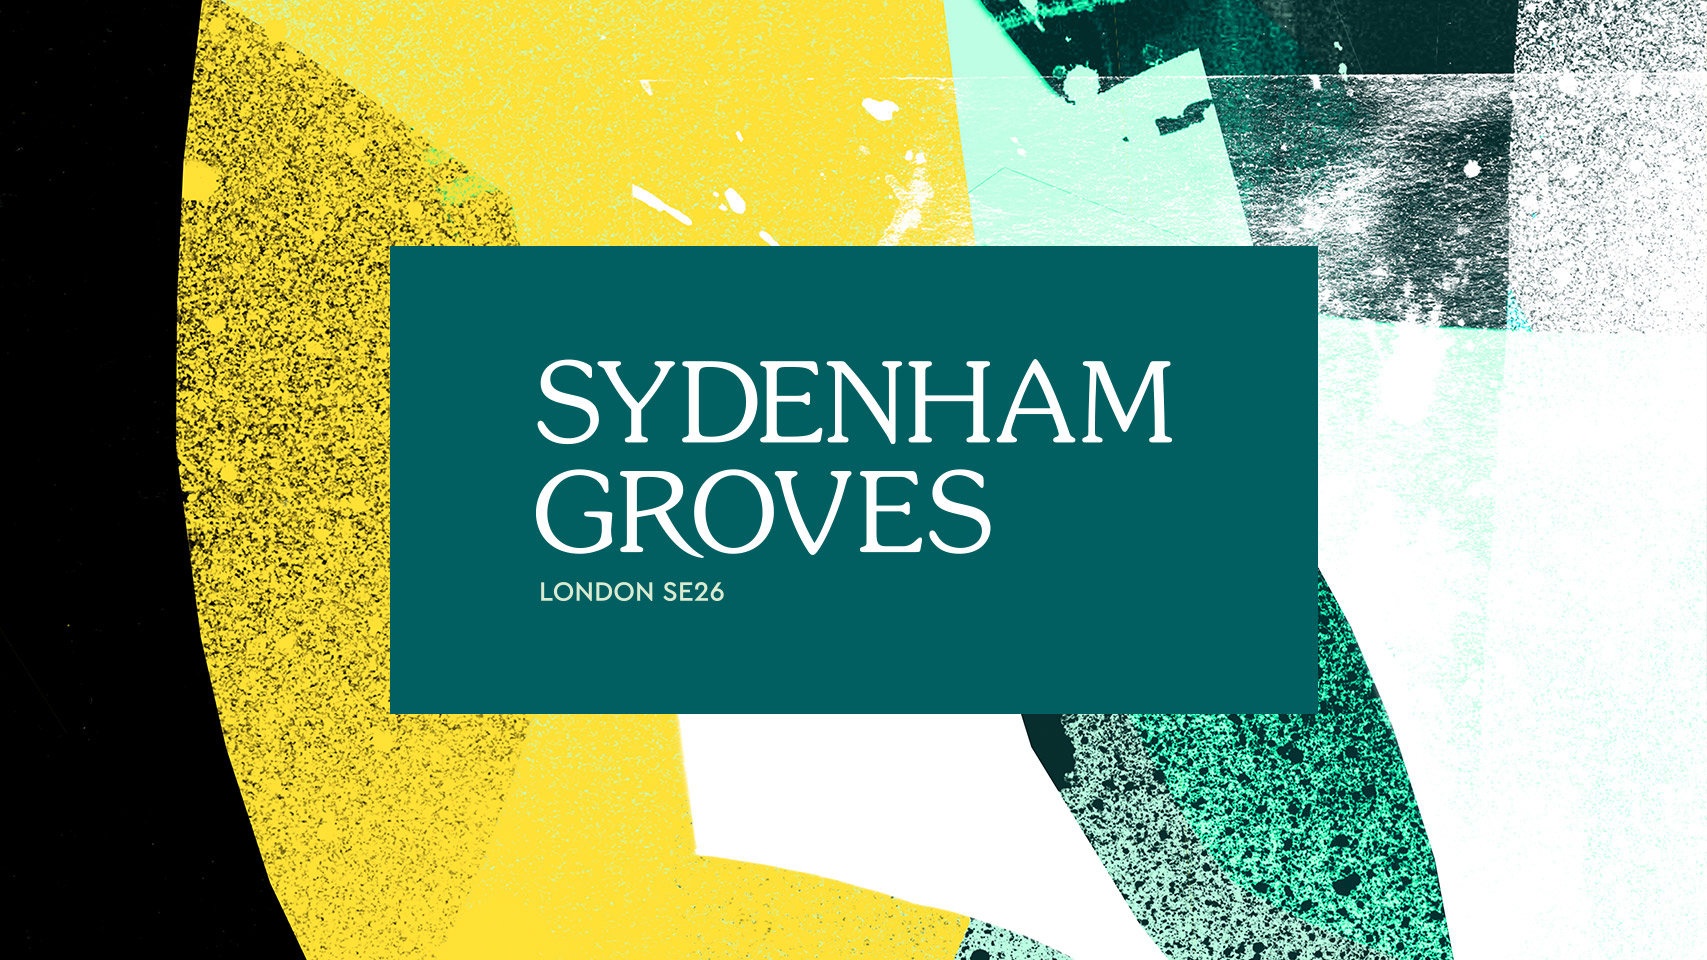 Sydenham Groves - Branding